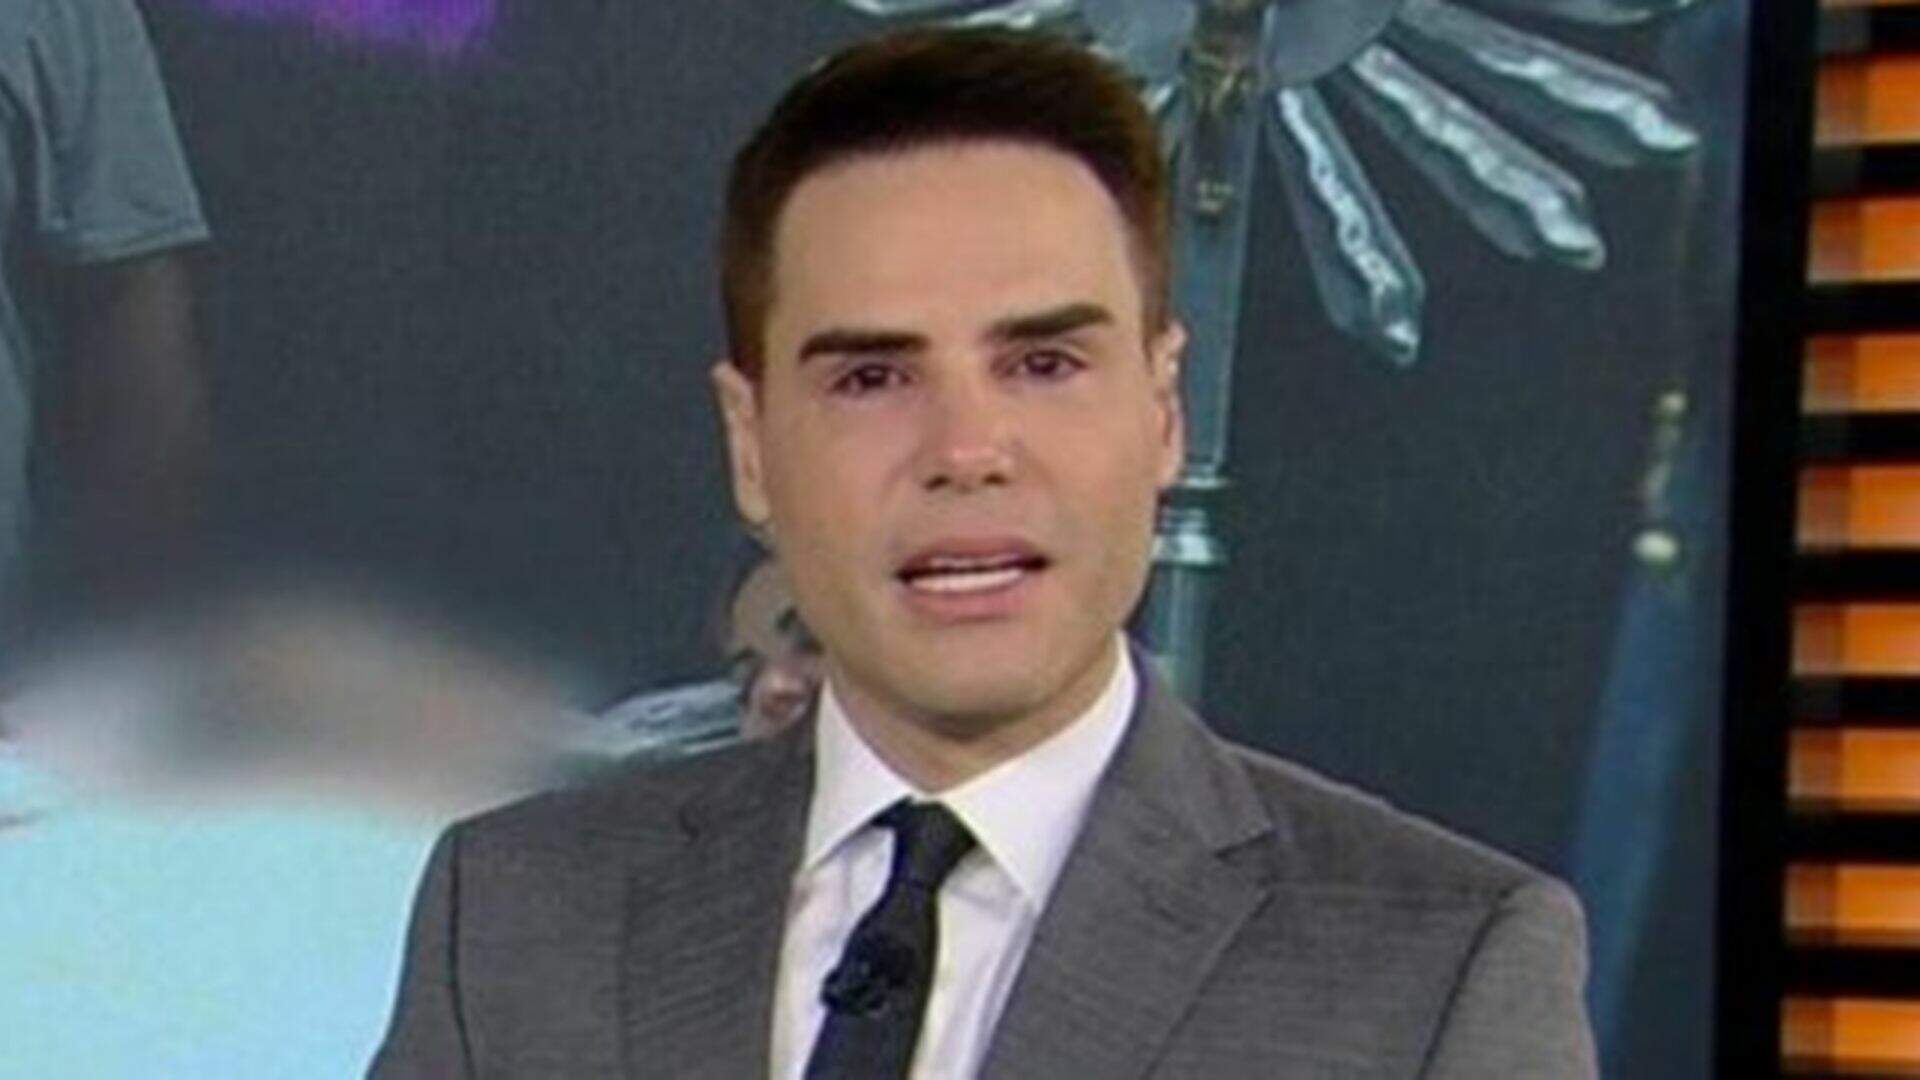 Record TV e Luiz Bacci são acusados de fake news, justiça condena e motivo viraliza: “Mentira” - Metropolitana FM